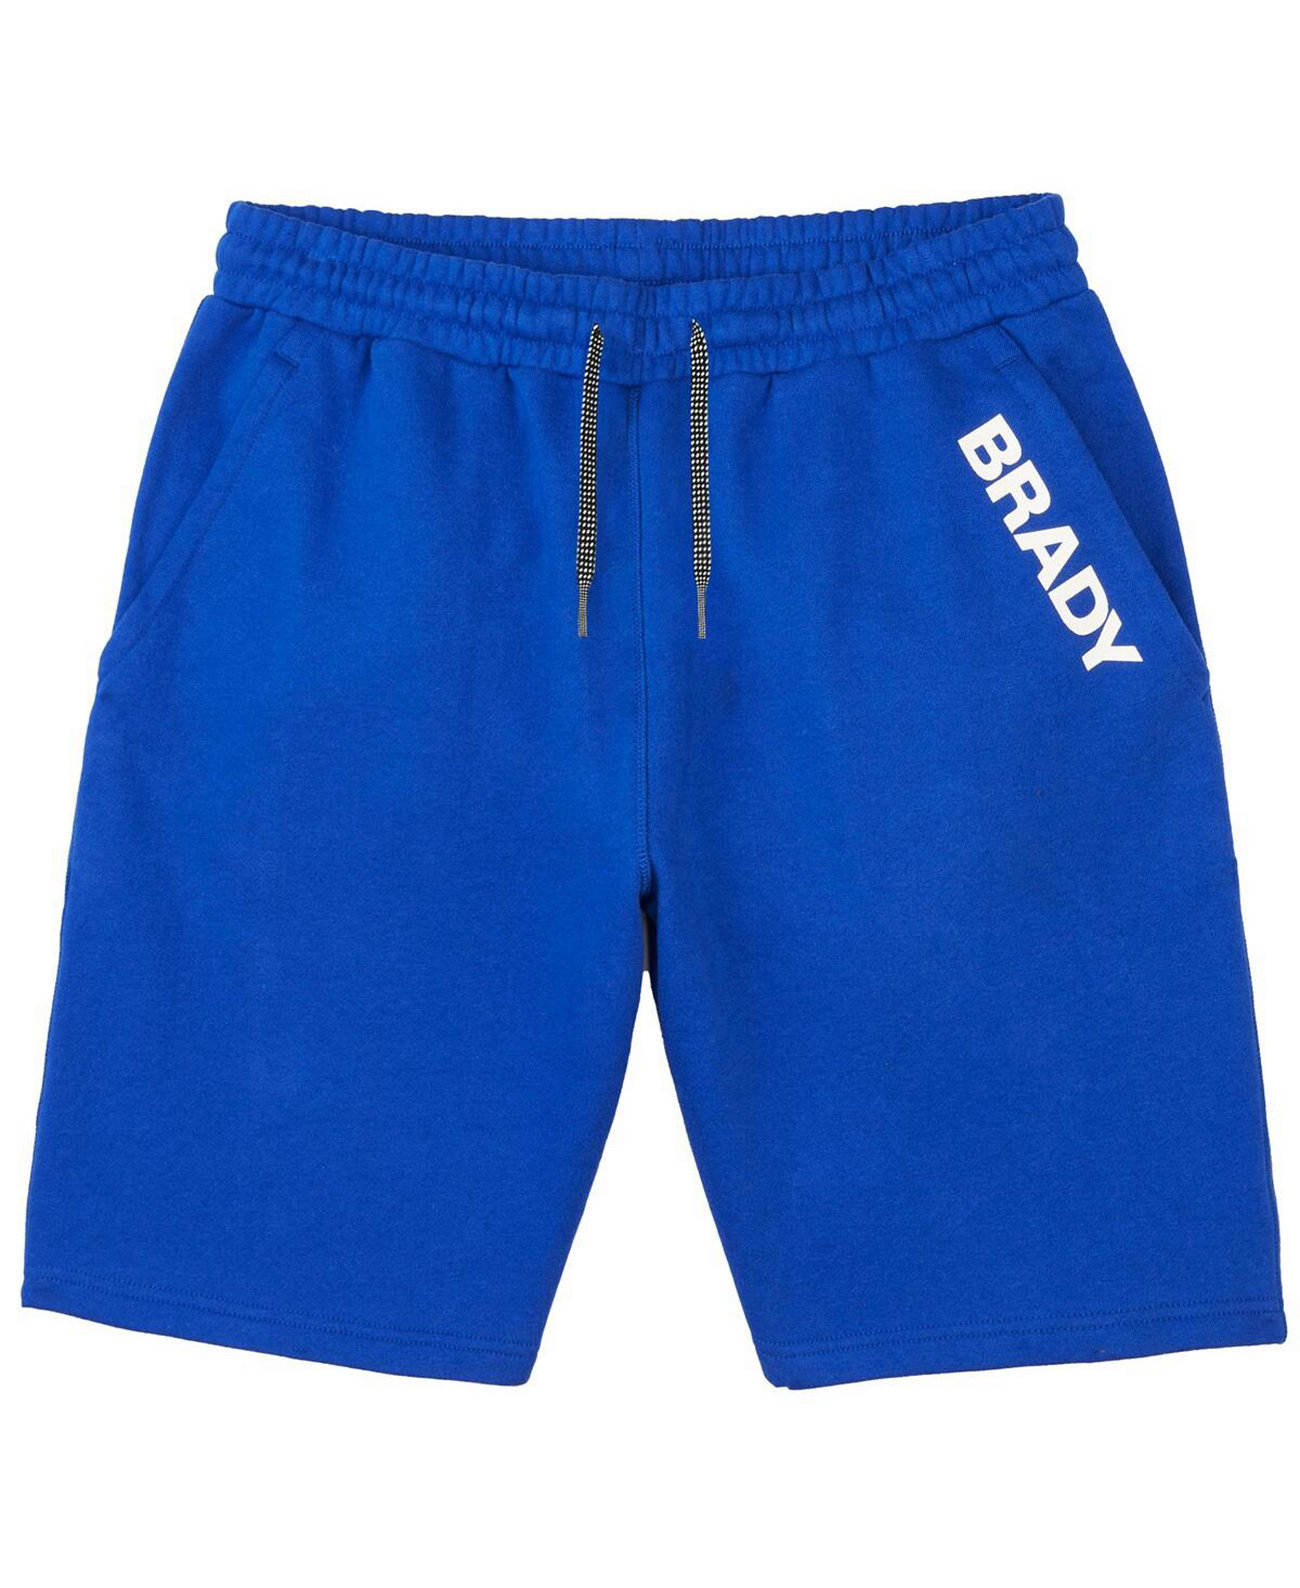 Мужские флисовые шорты Brady Blue Wordmark BRADY